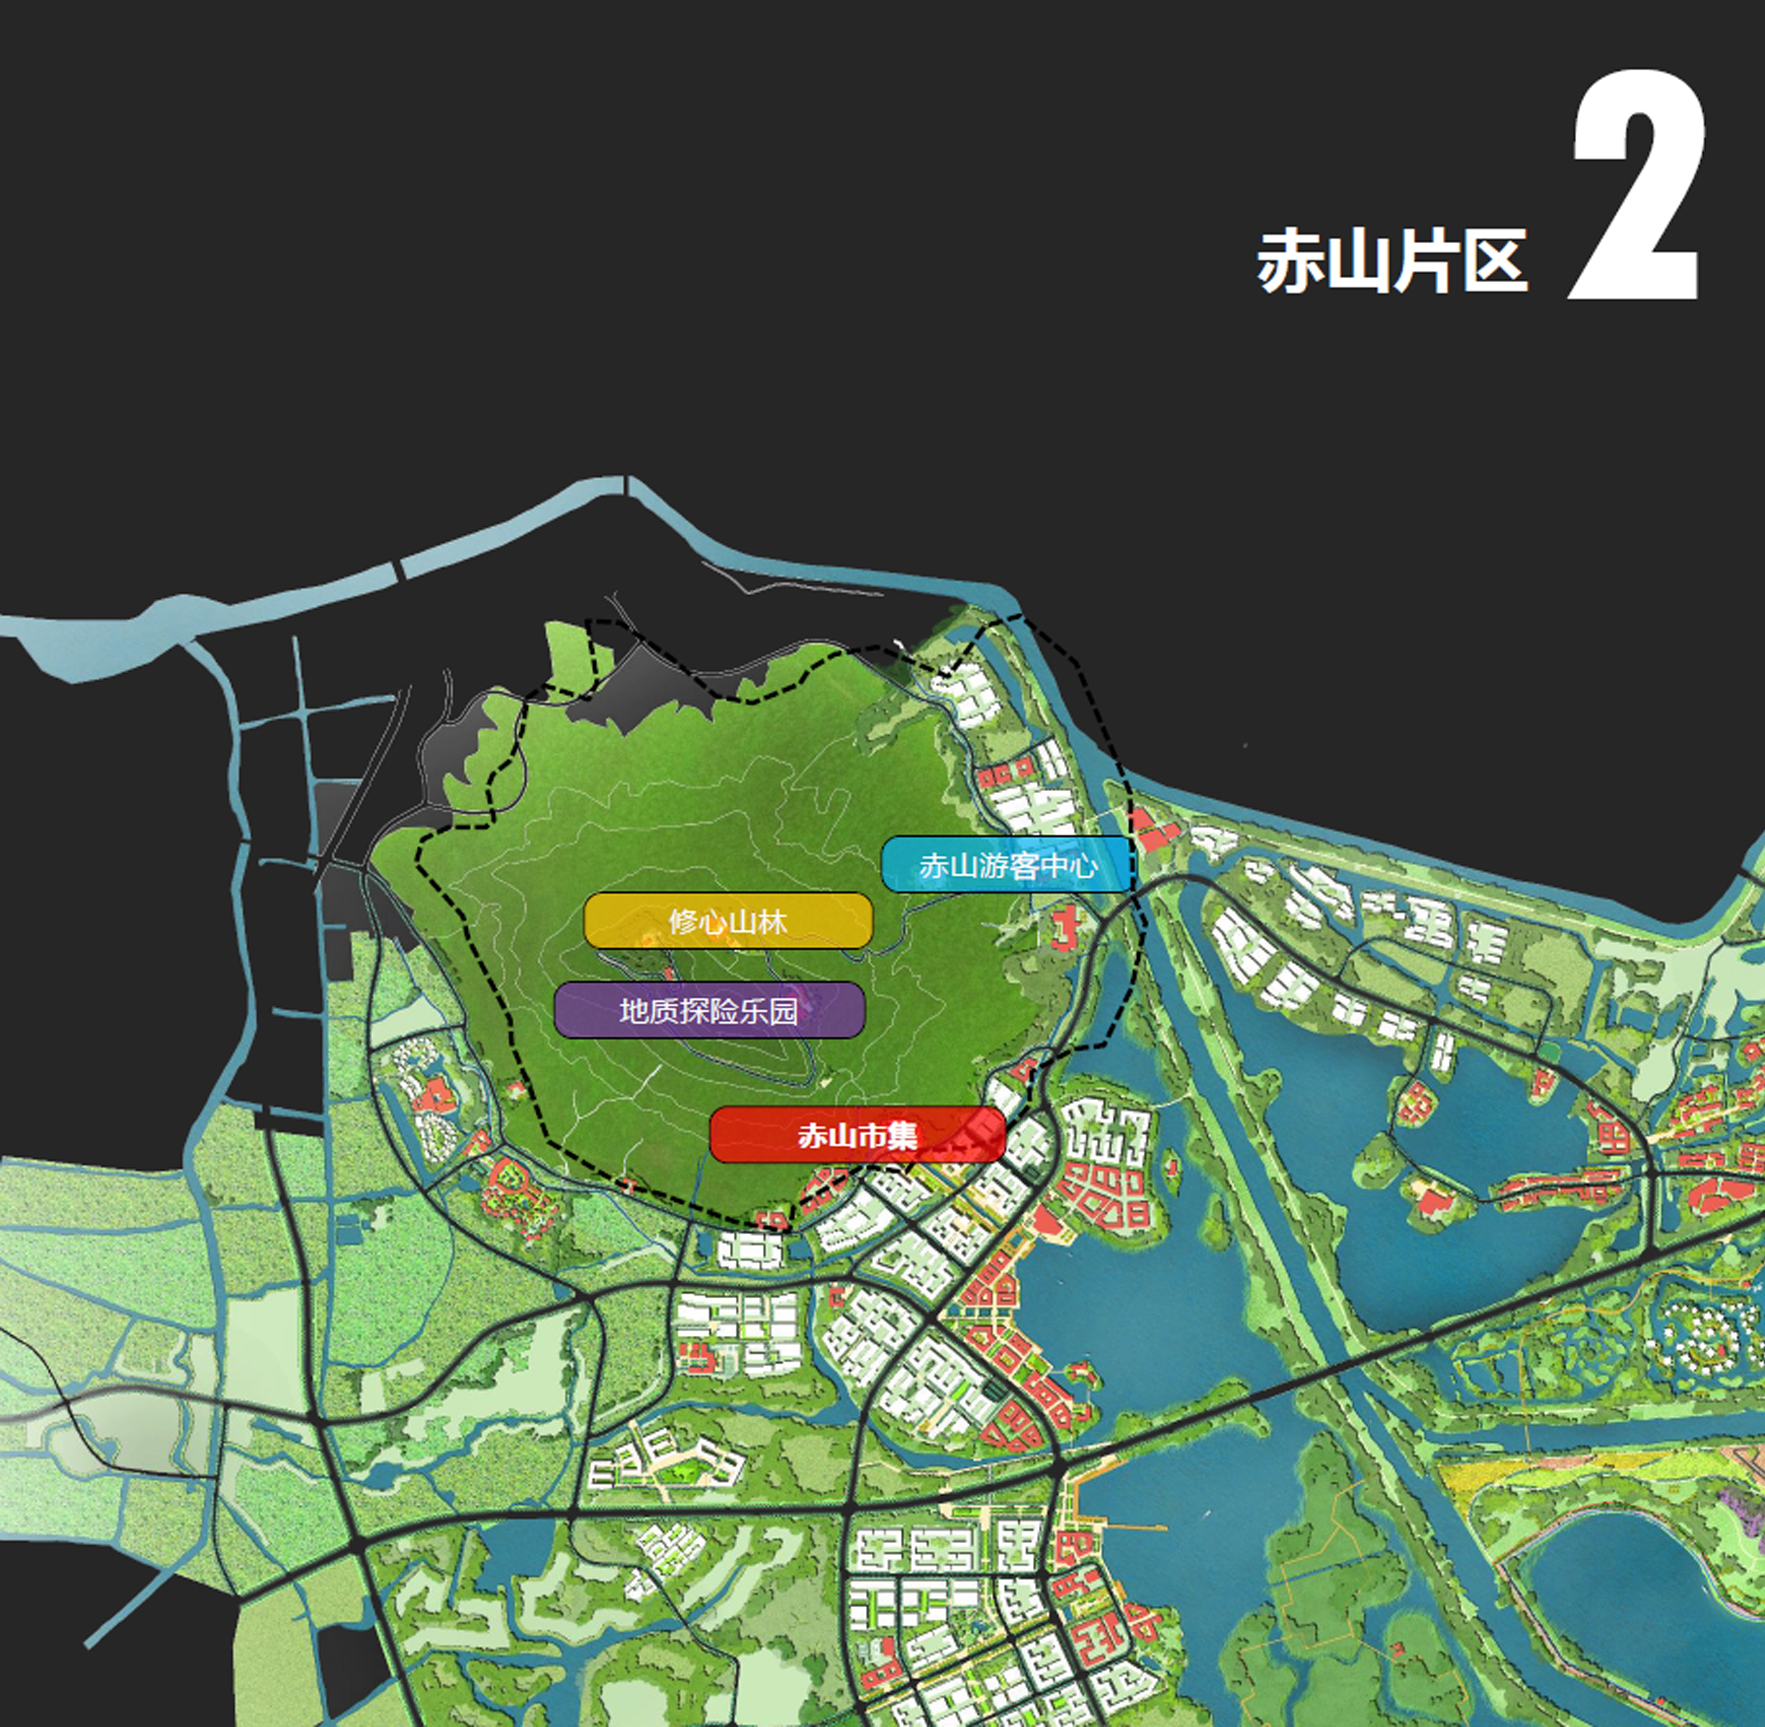 江苏句容赤山湖旅游度假区总体策划及规划